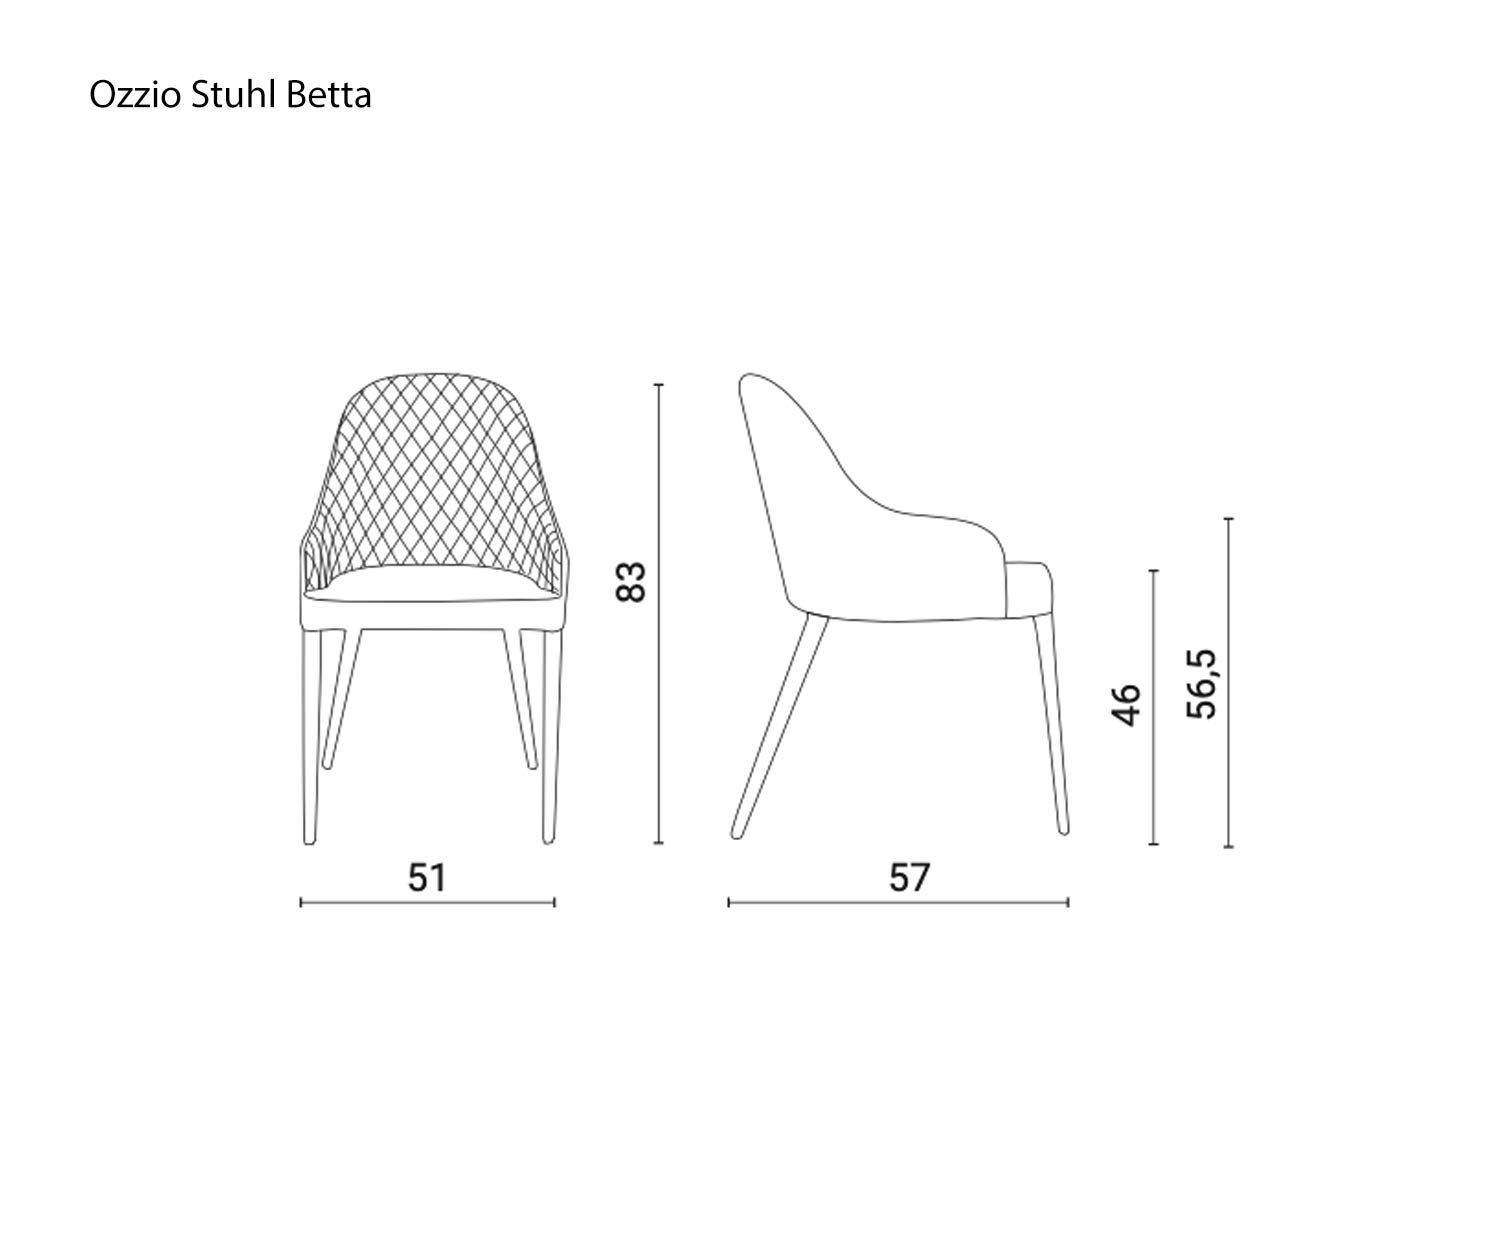 Ozzio Design Stuhl Betta Maße Abmessungen Größen Größenangaben